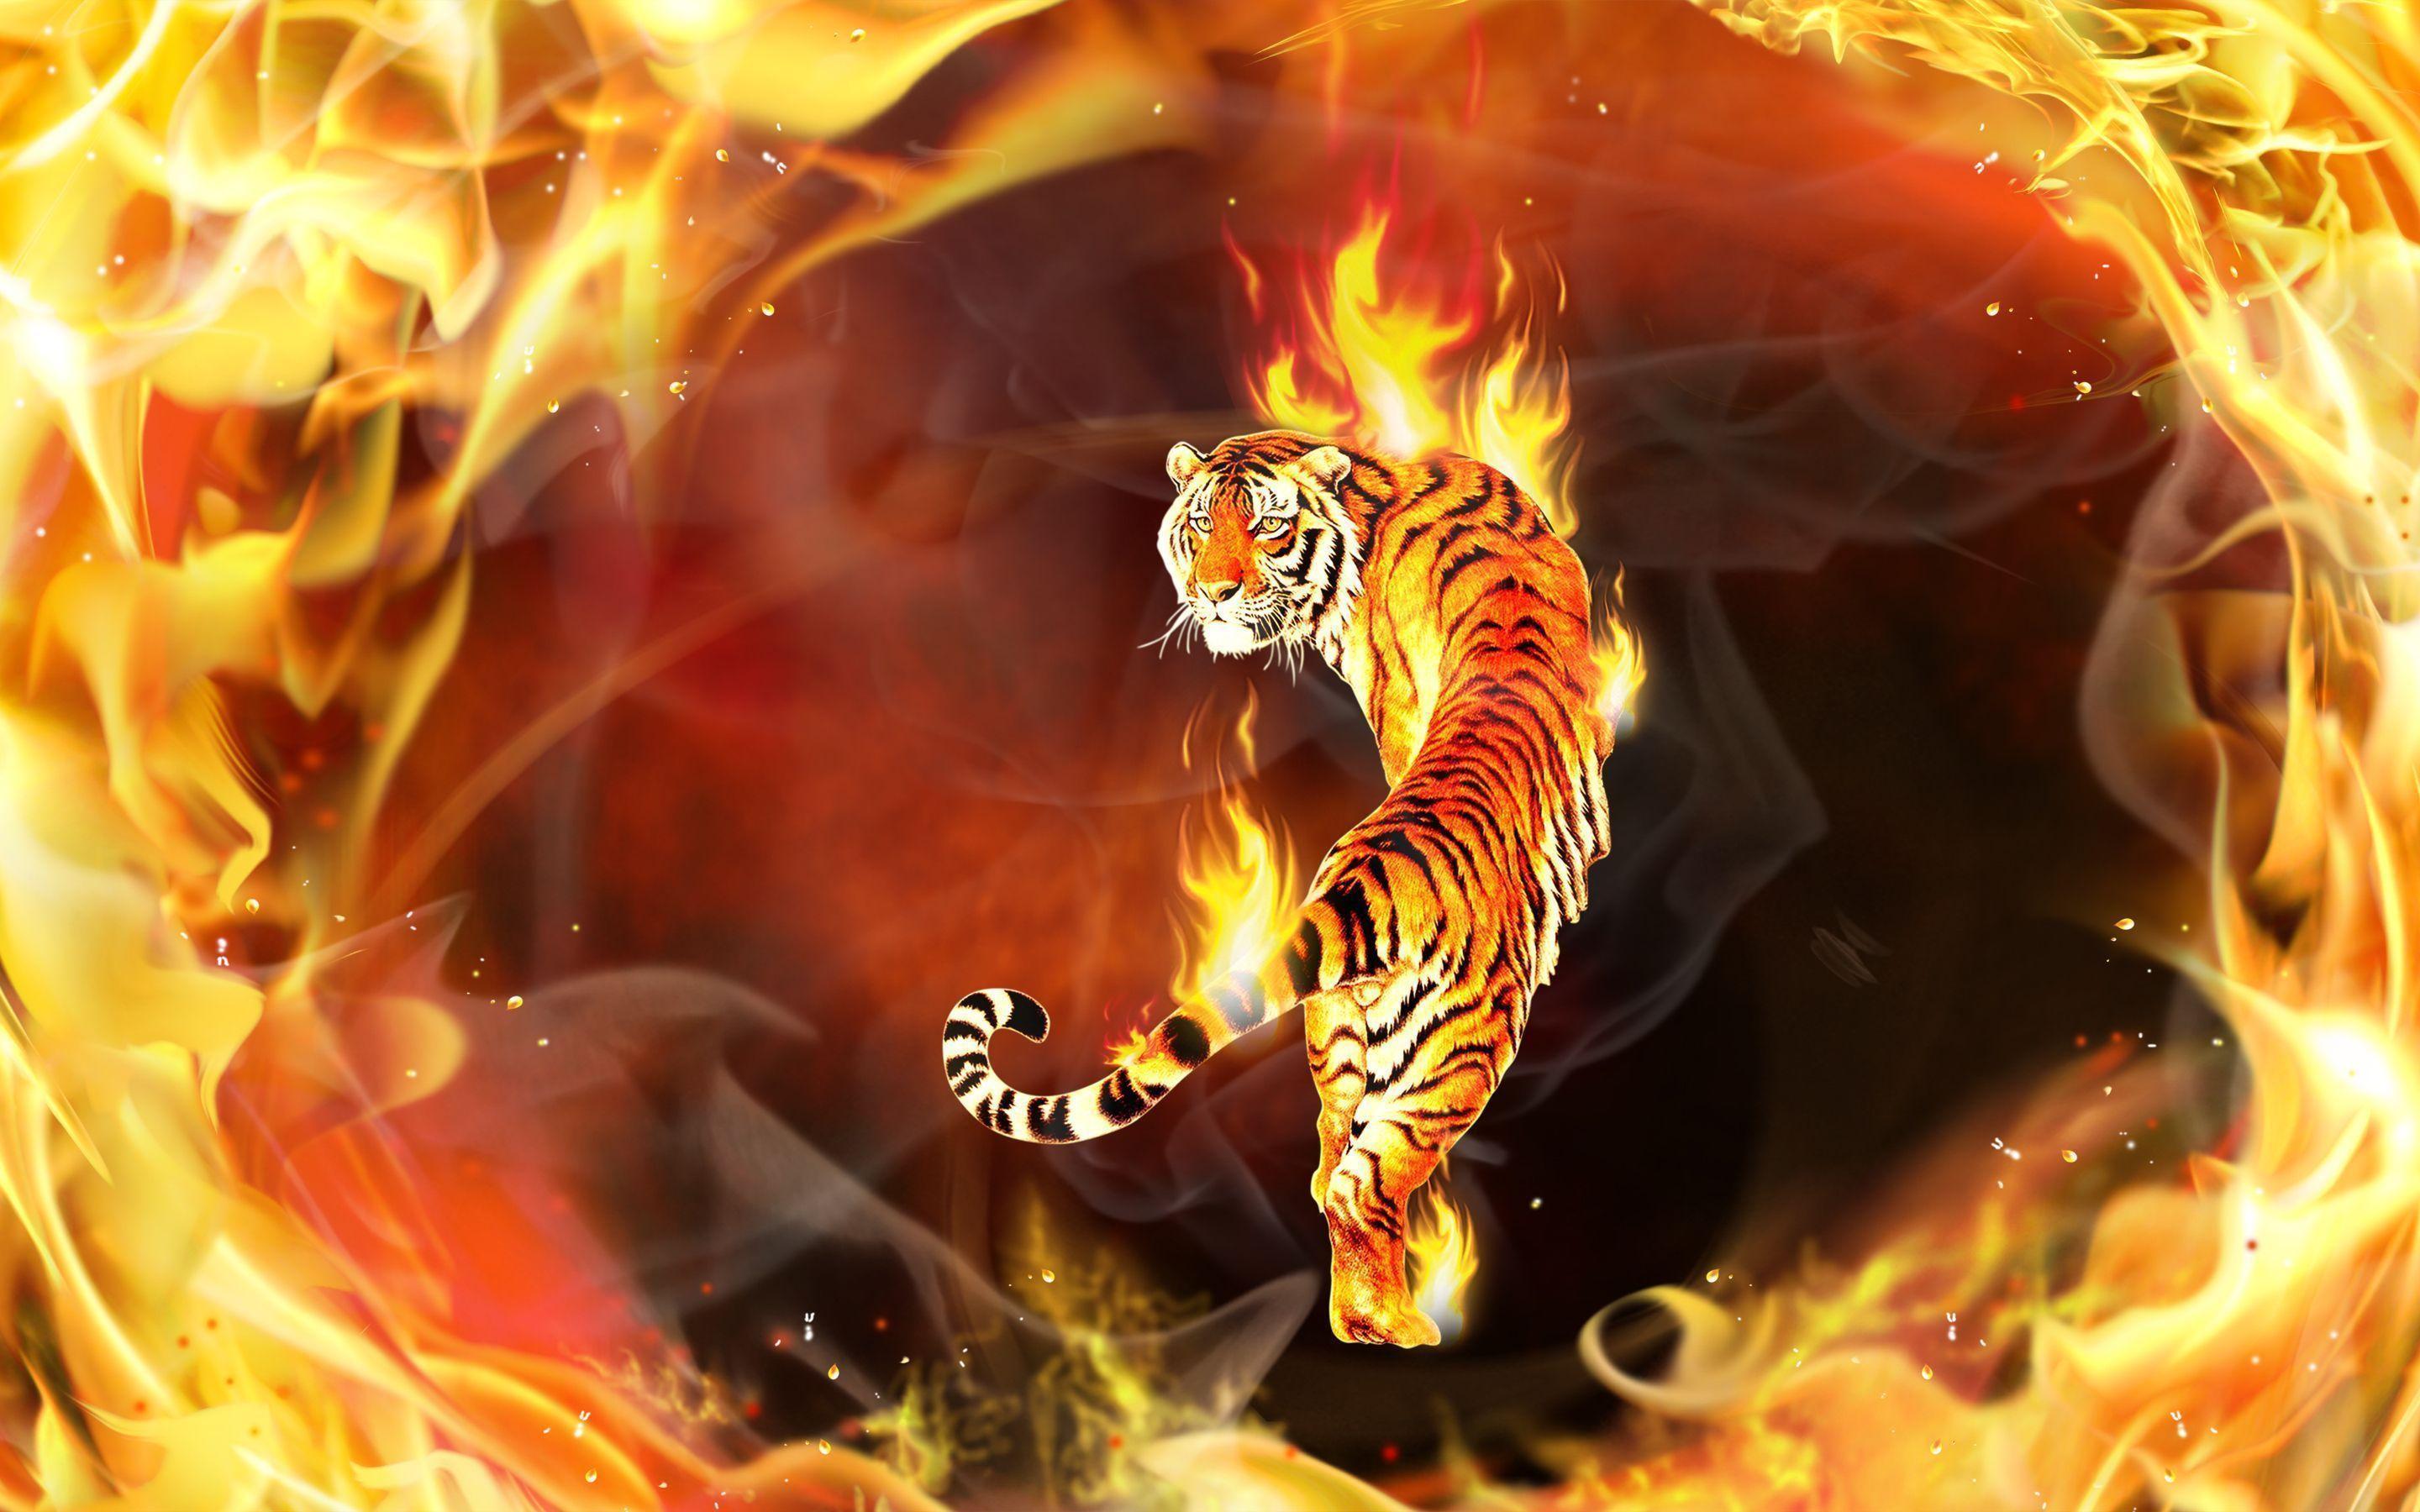 Fire Tiger Flames Digital Art Hd Wallpaper